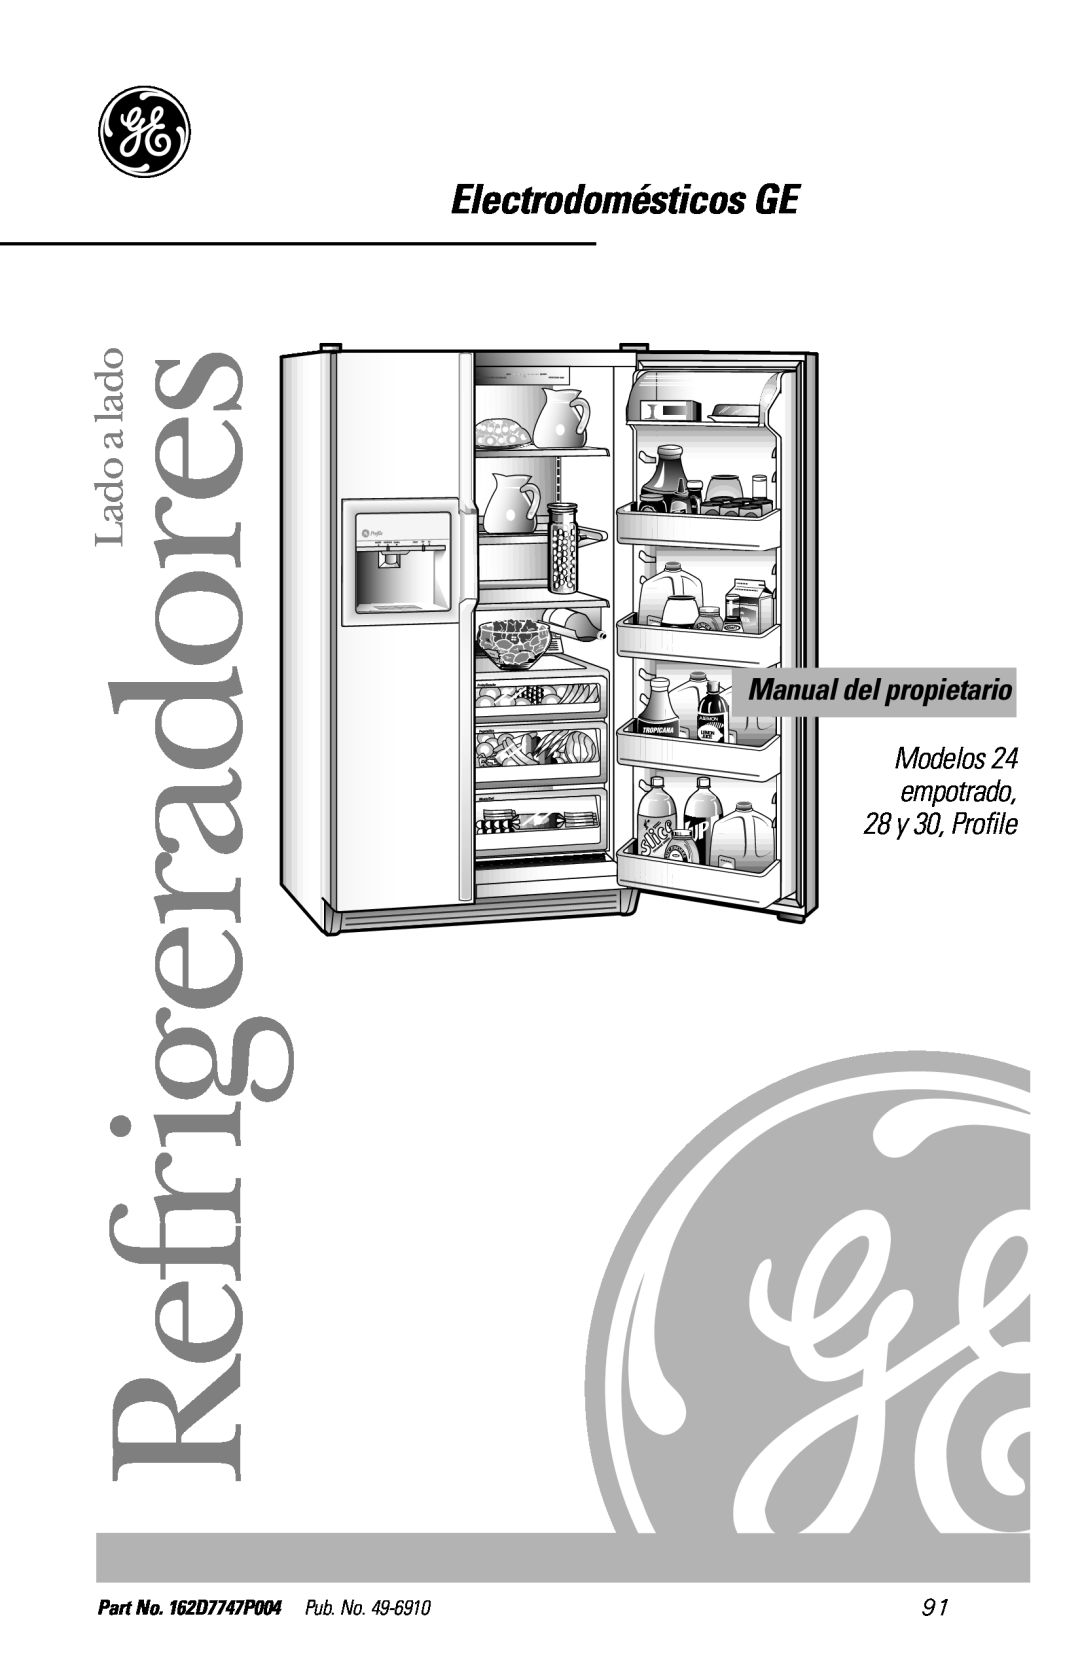 GE 28, 30 Electrodomésticos GE, Lado a lado, Modelos, empotrado, 28 y 30, Profile, Manual del propietario, Refrigeradores 